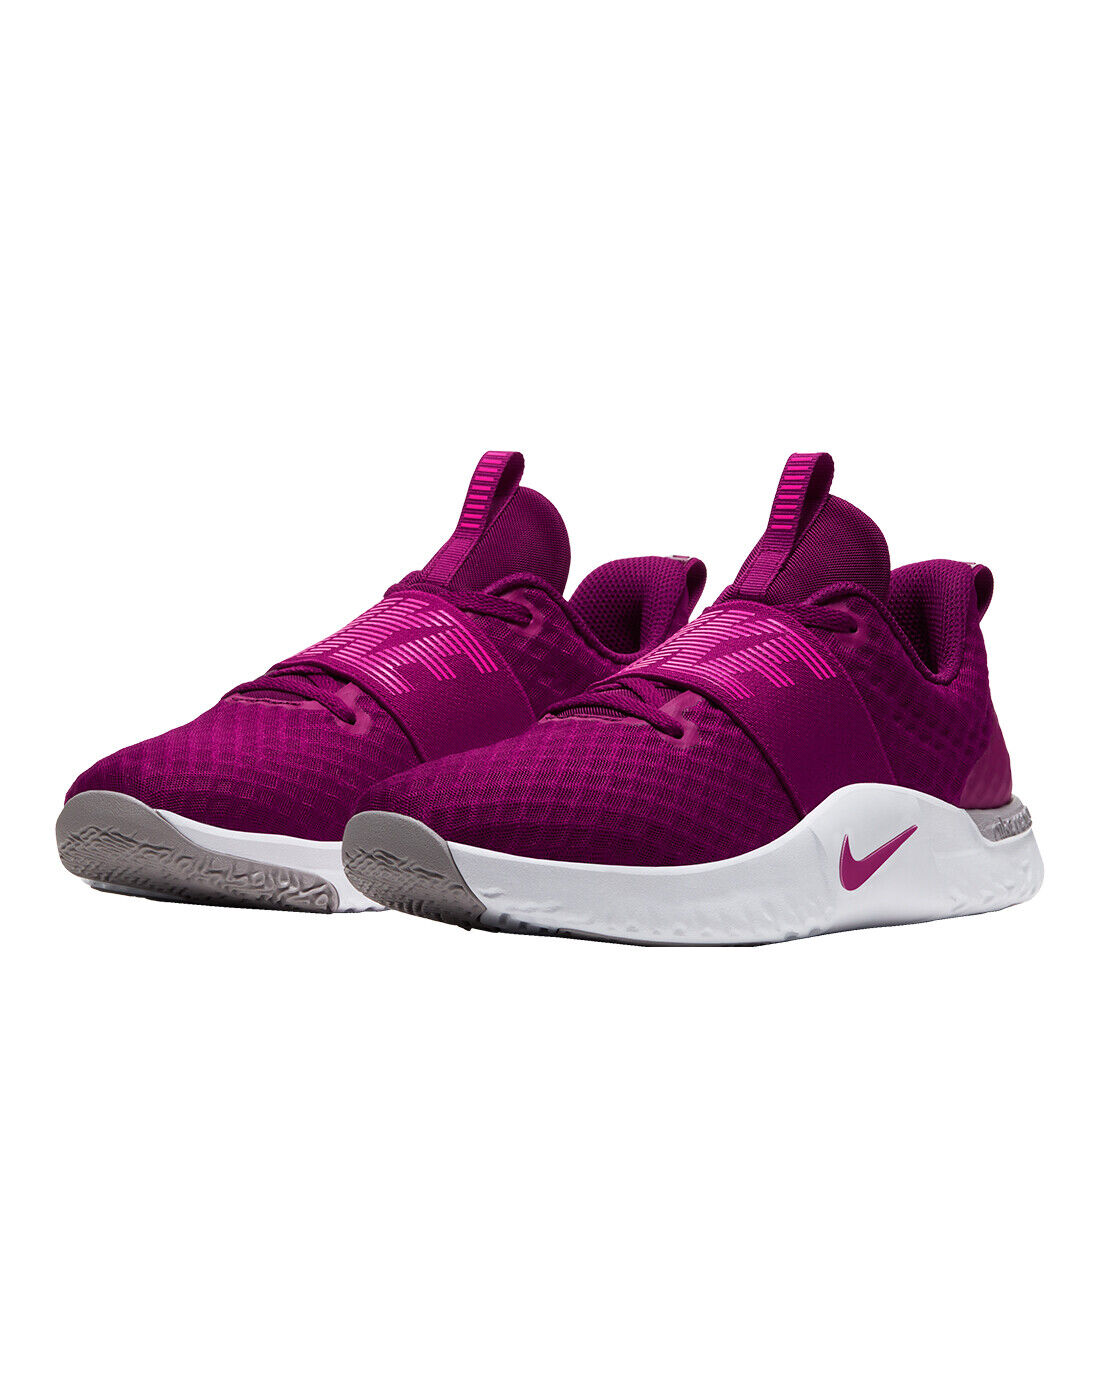 Women's Nike Renew In-Season TR 9 Training Shoes, AR4543 601 Multi Sizes True Berry/Pink Blast